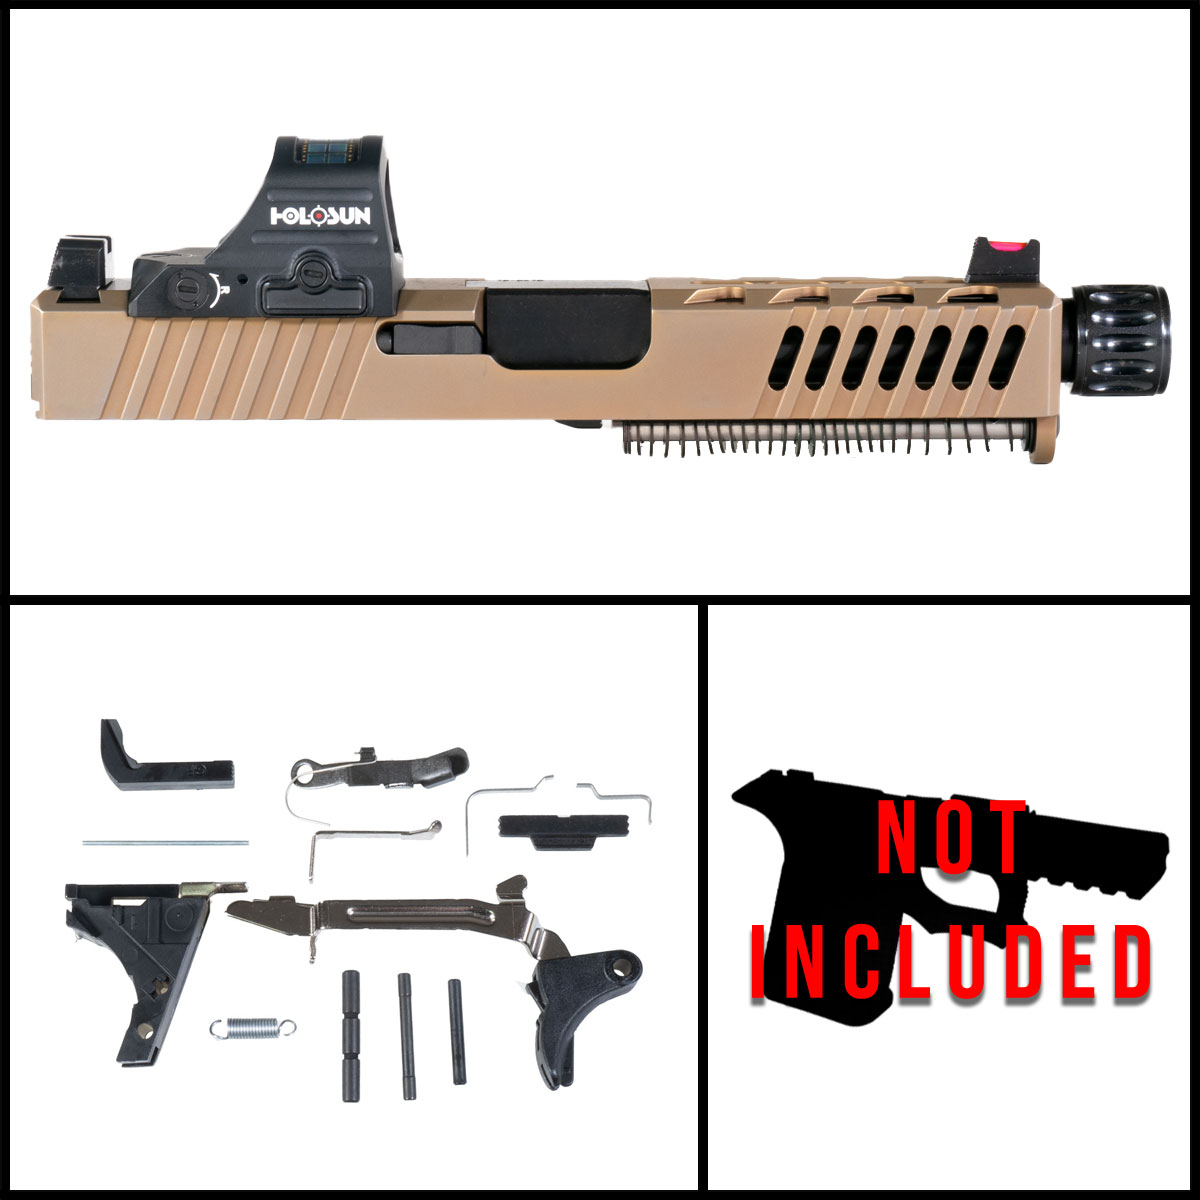 DTT 'Oxide' 9mm Full Pistol Build Kit (Everything Minus Frame) - Glock 19 Compatible